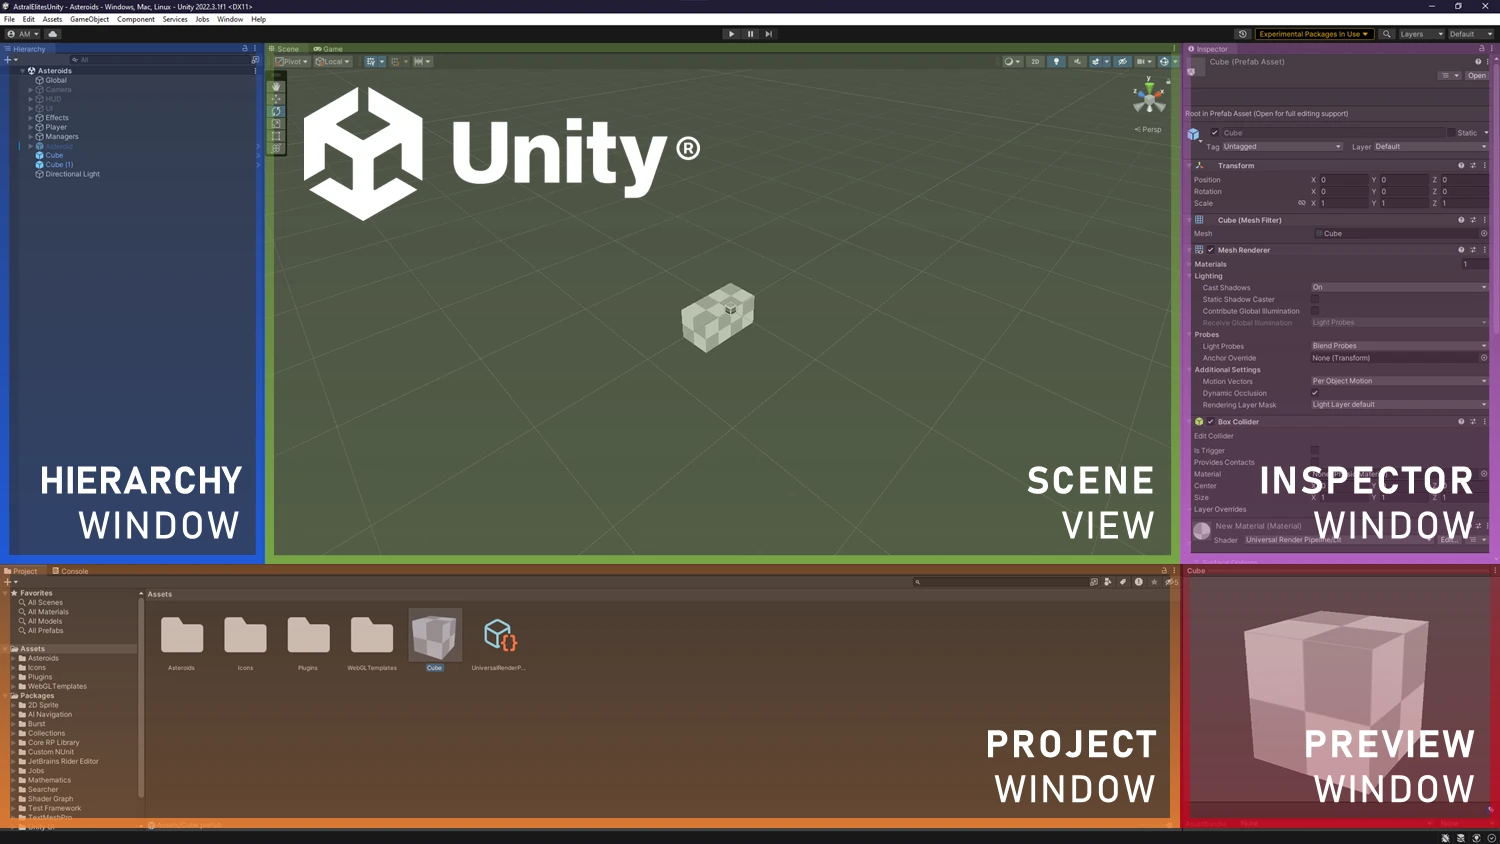 Unity® Editor layout